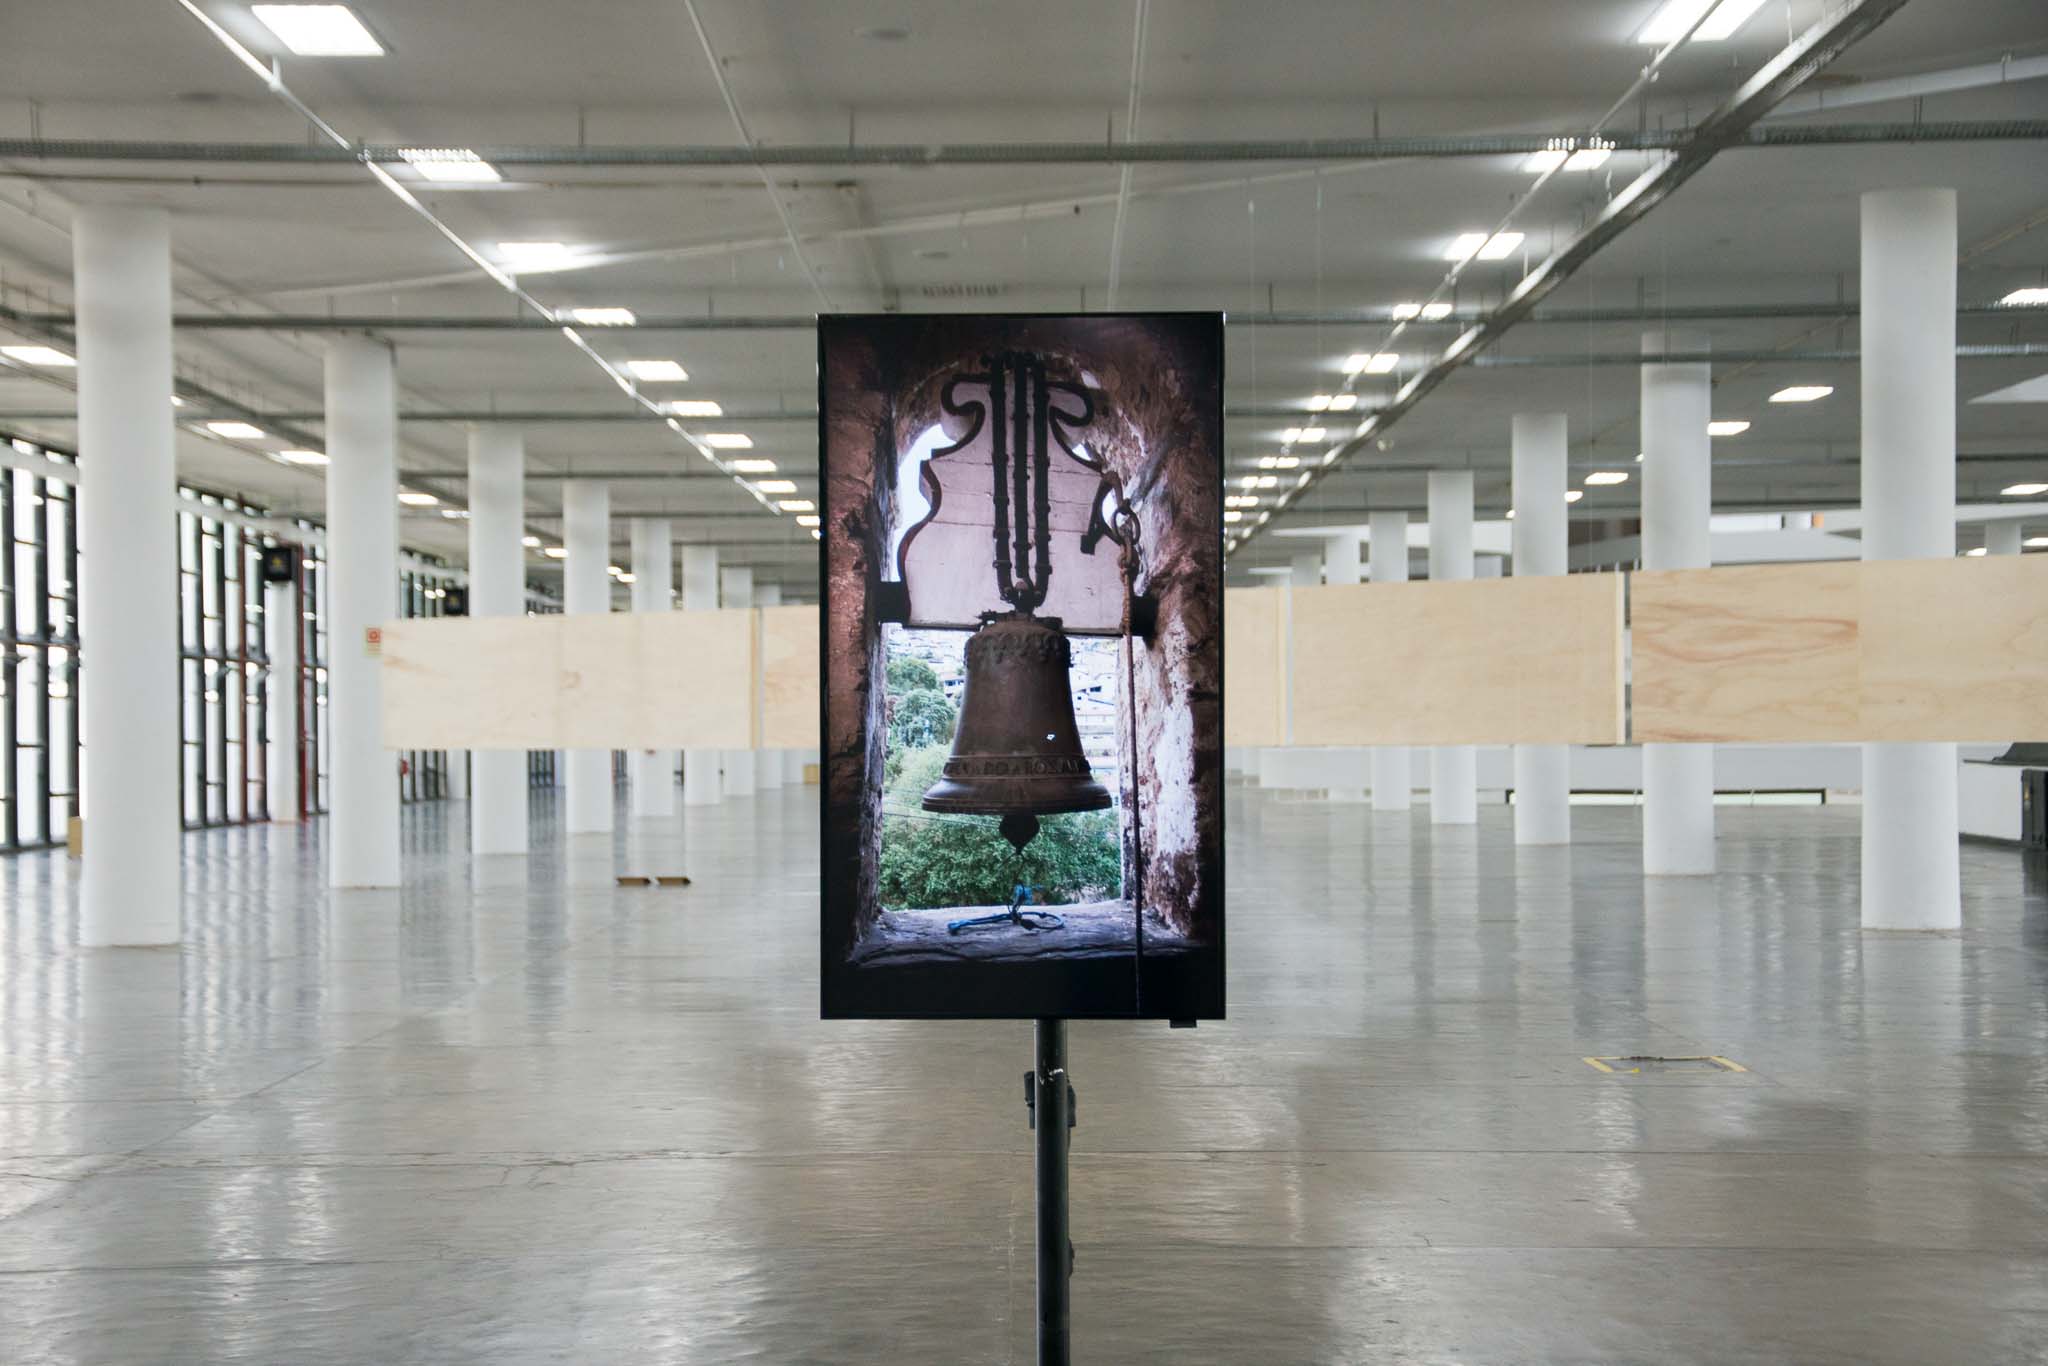  Vídeo que apresenta o enunciado Sino de Ouro Preto na exposição <i>Vento</i>, parte da 34ª Bienal de São Paulo. Foto de Levi Fanan / Fundação Bienal de São Paulo